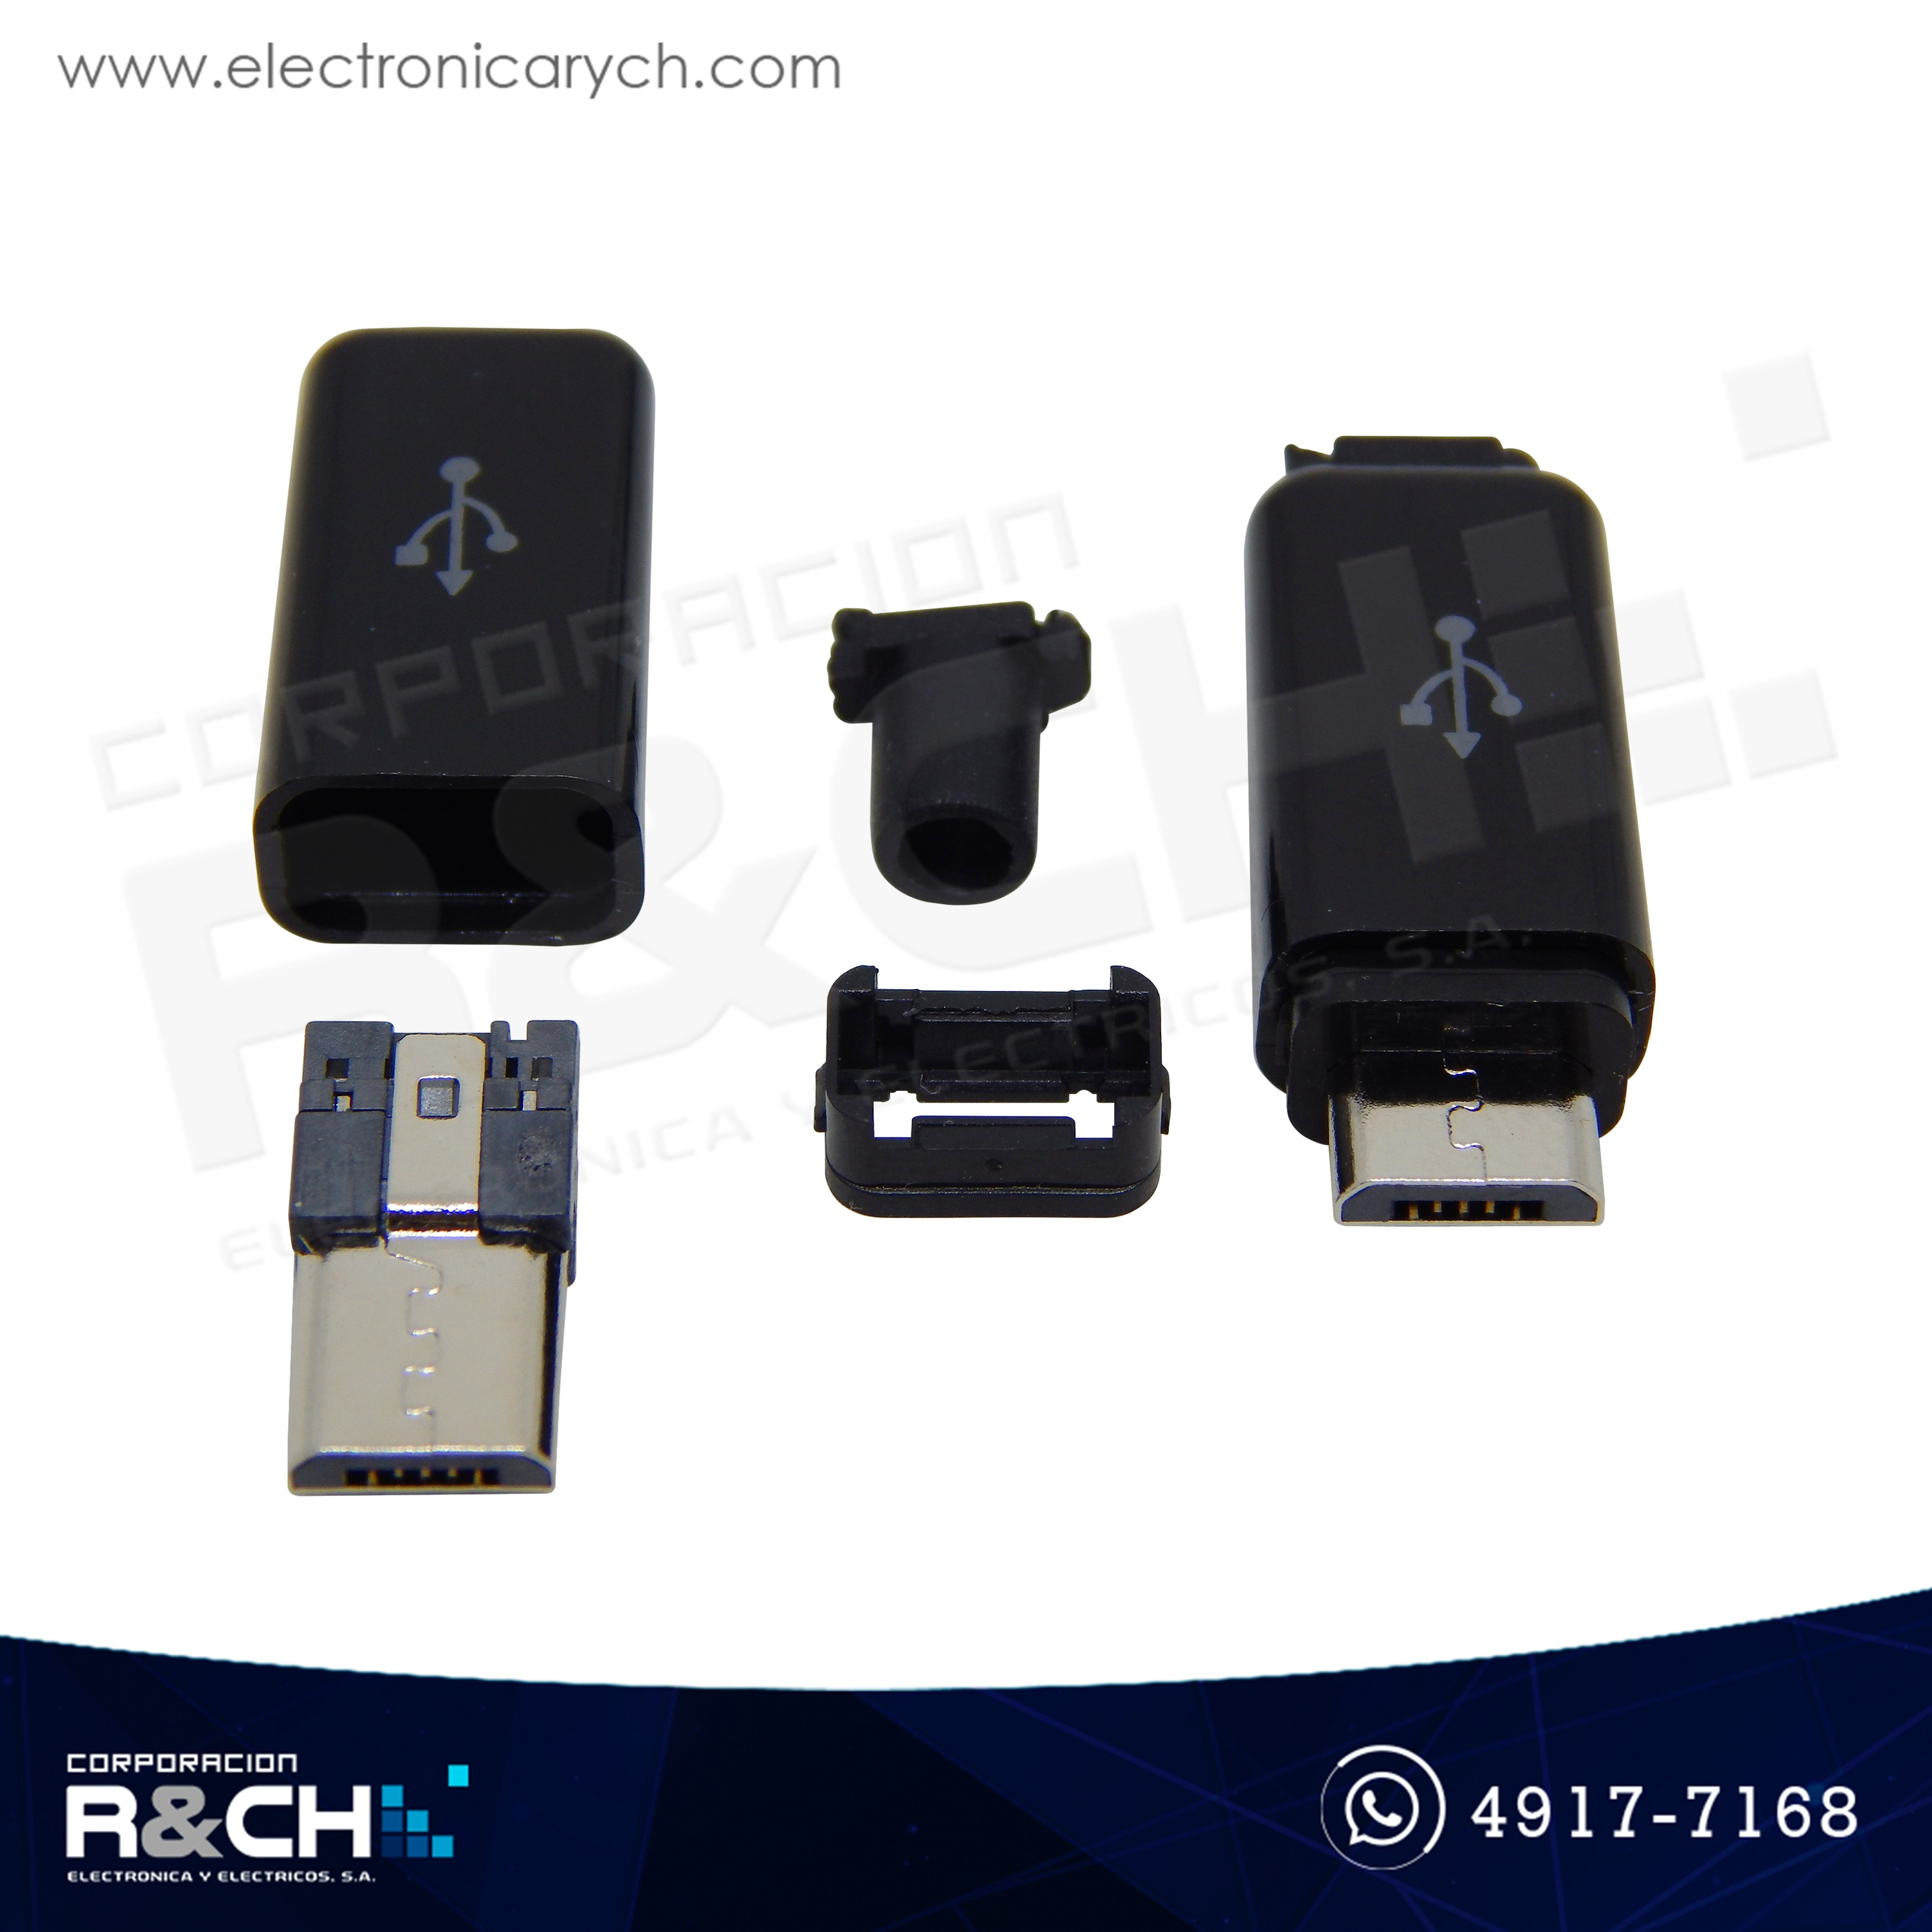 PL-USBM Plug micro USB macho para cablear  tapa negro u blanco